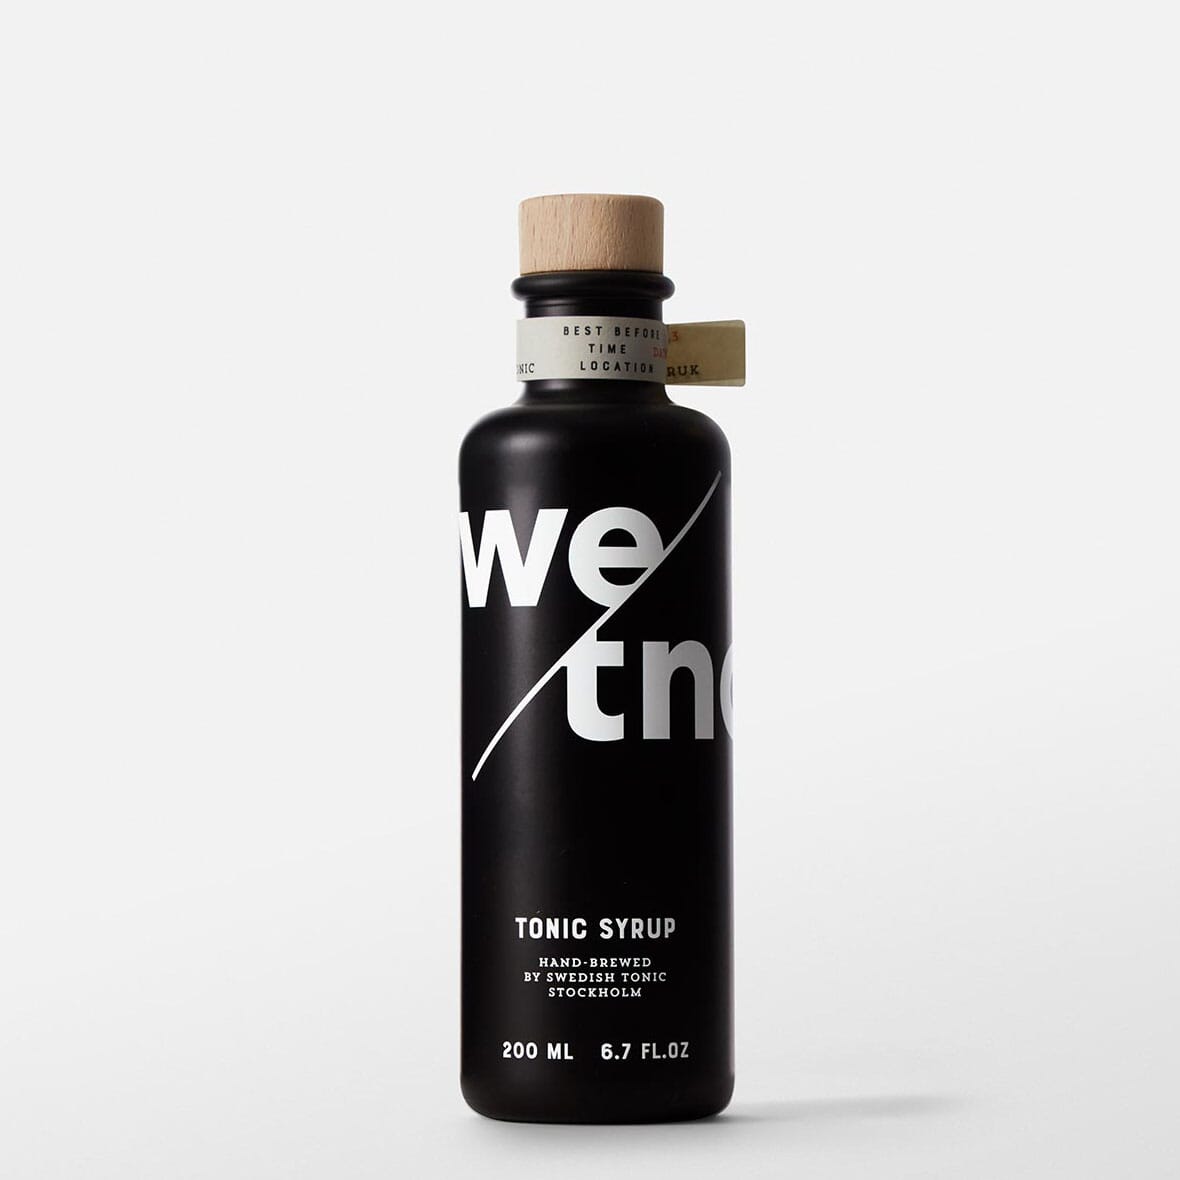 Prisvinnande tonic syrup från Swedish Tonic som tar din GT från ordinär till extraordinär